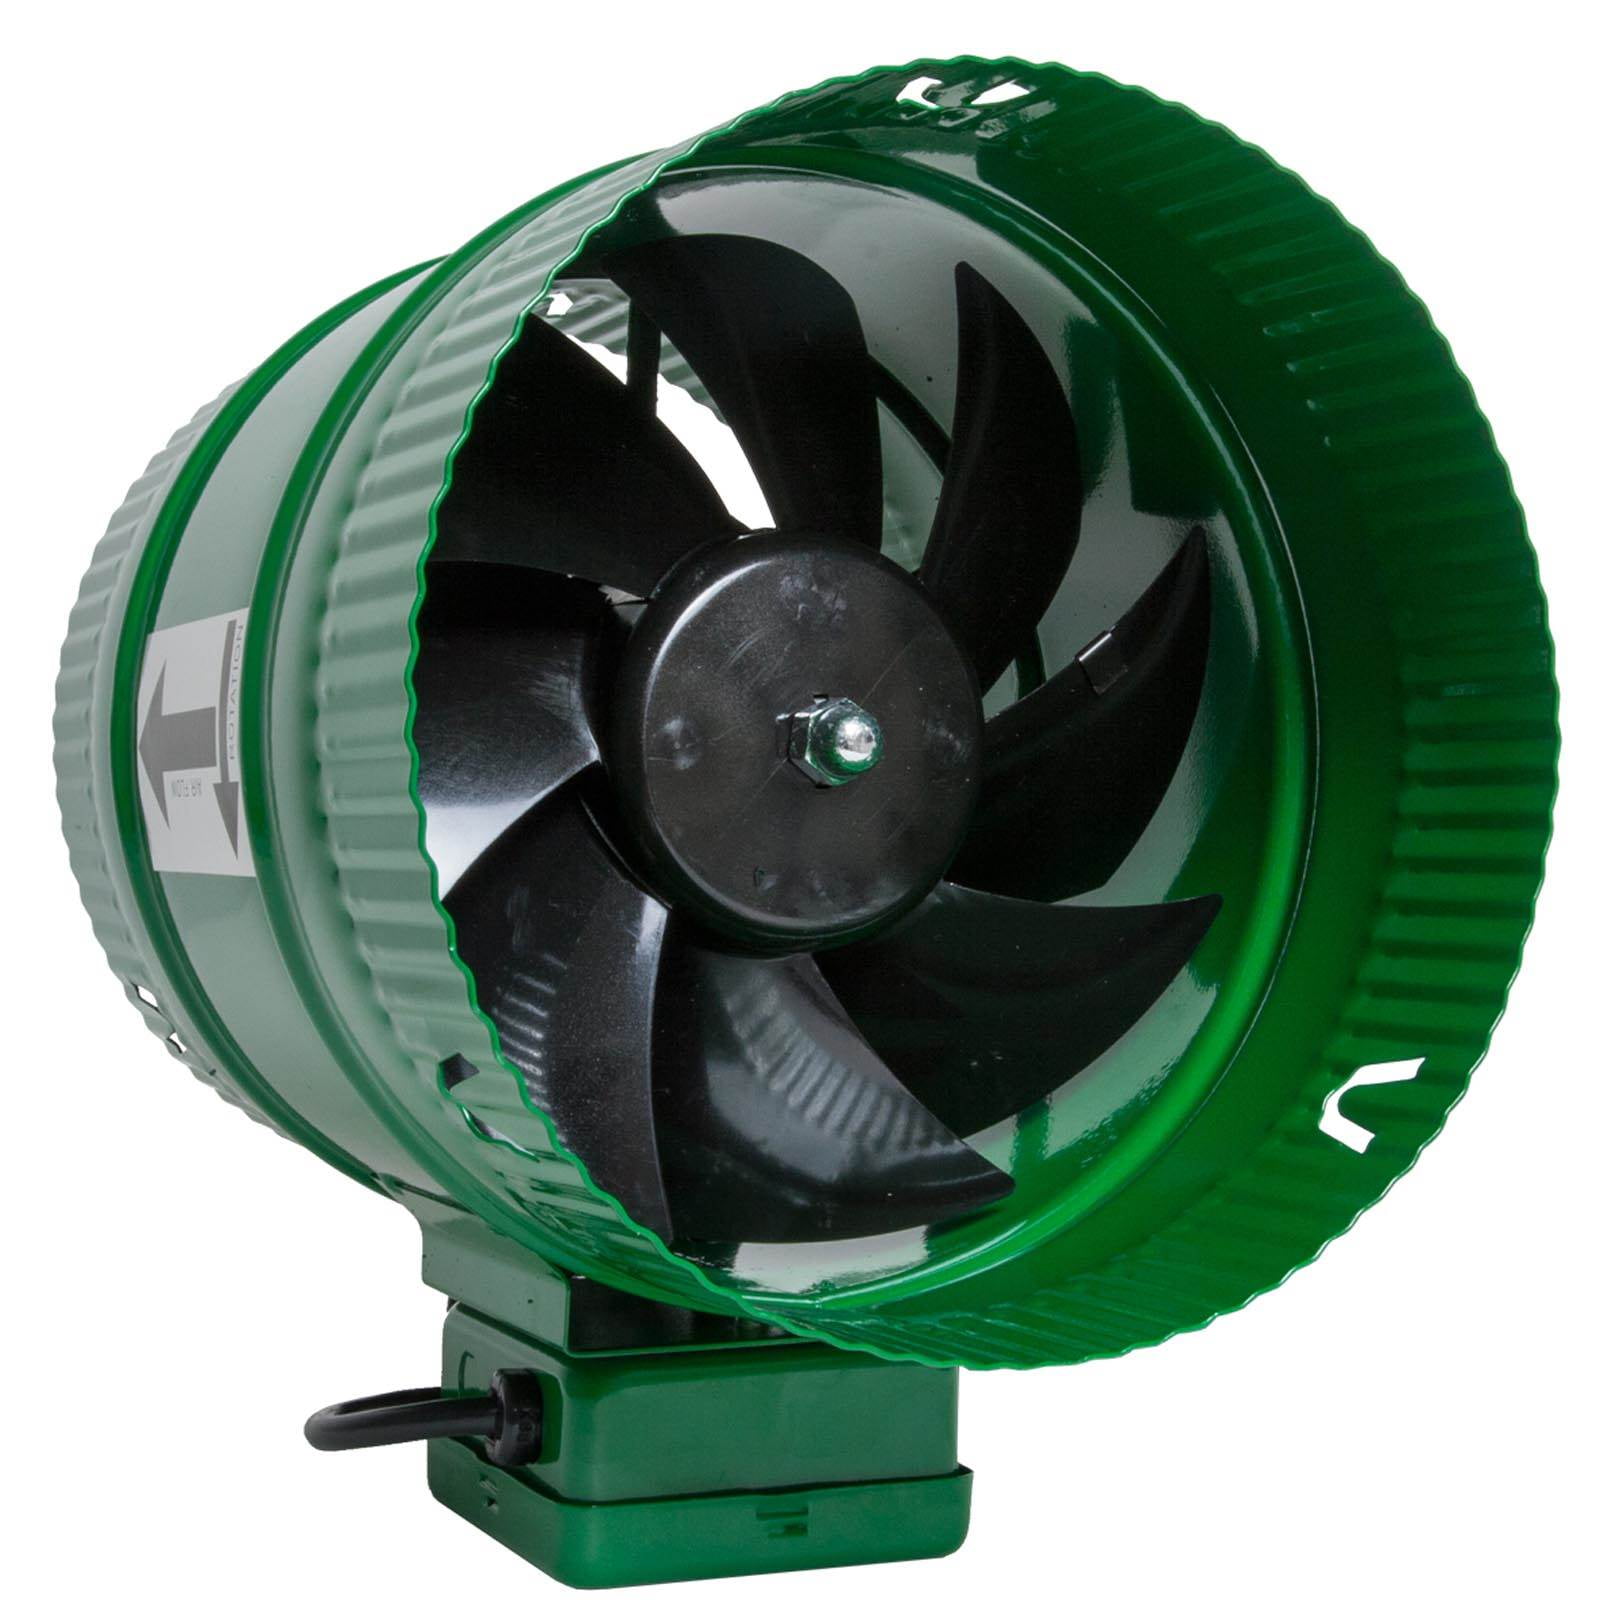 Fan active. Вентилятор циркуляции воздуха. Air Fan. Powerline вентилятор. Booster Fan DJF-2-1100.